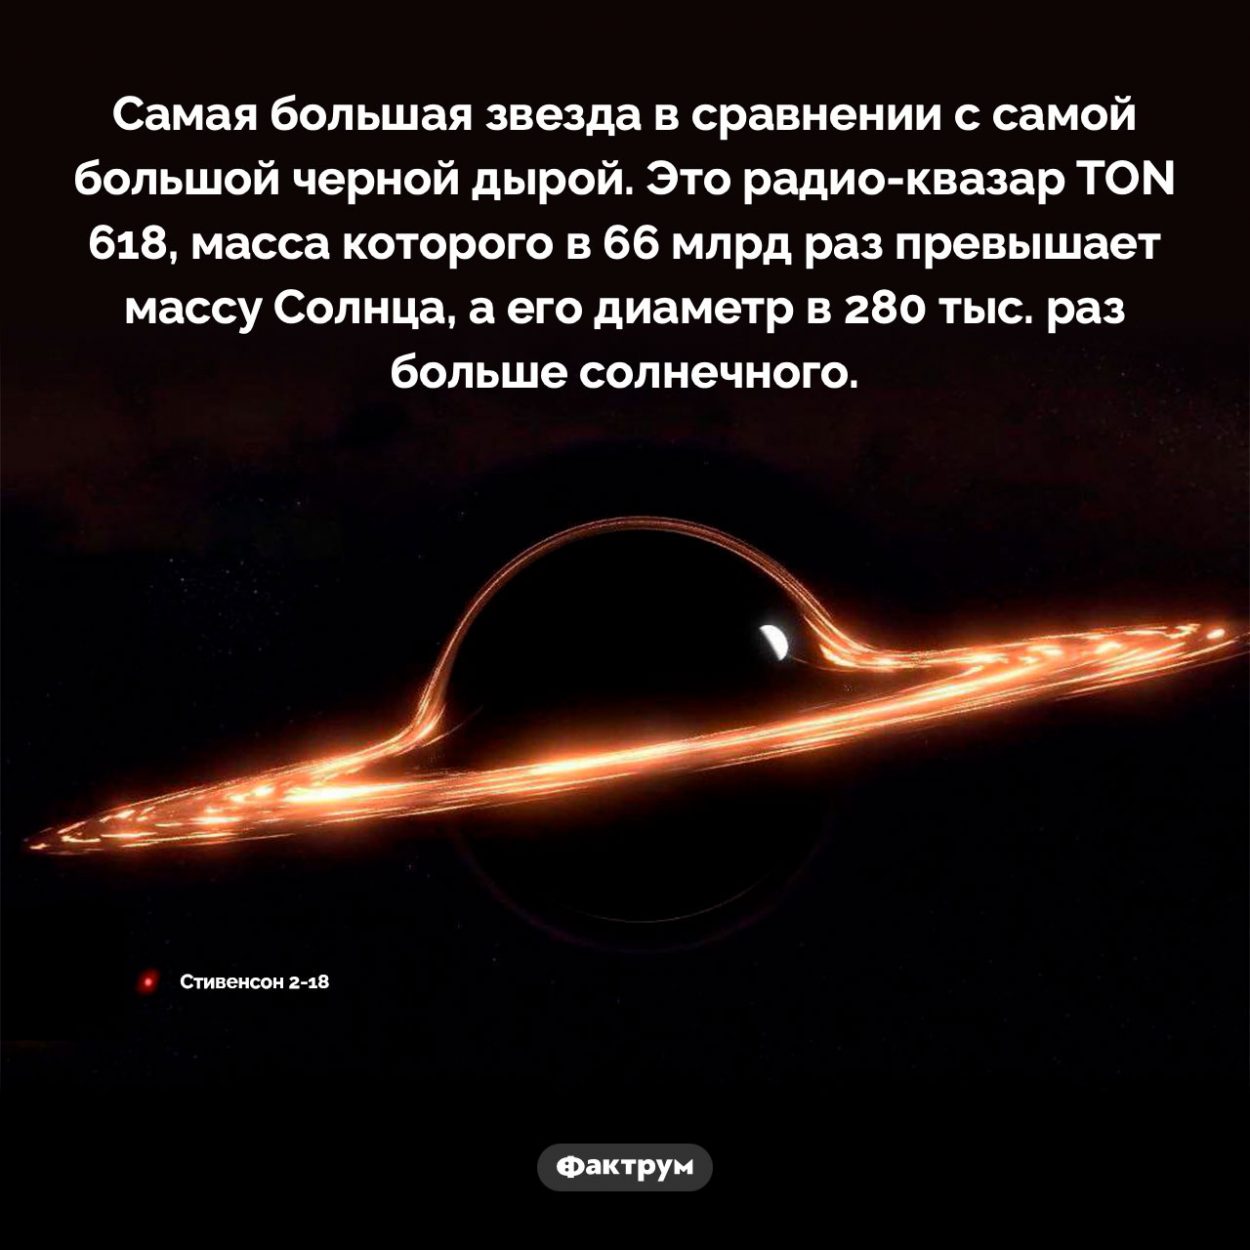 Самая большая звезда в сравнении с самой большой черной дырой. Самая большая звезда в сравнении с самой большой черной дырой. Это радио-квазар TON 618, масса которого в 66 млрд раз превышает массу Солнца, а его диаметр в 280 тыс. раз больше солнечного.